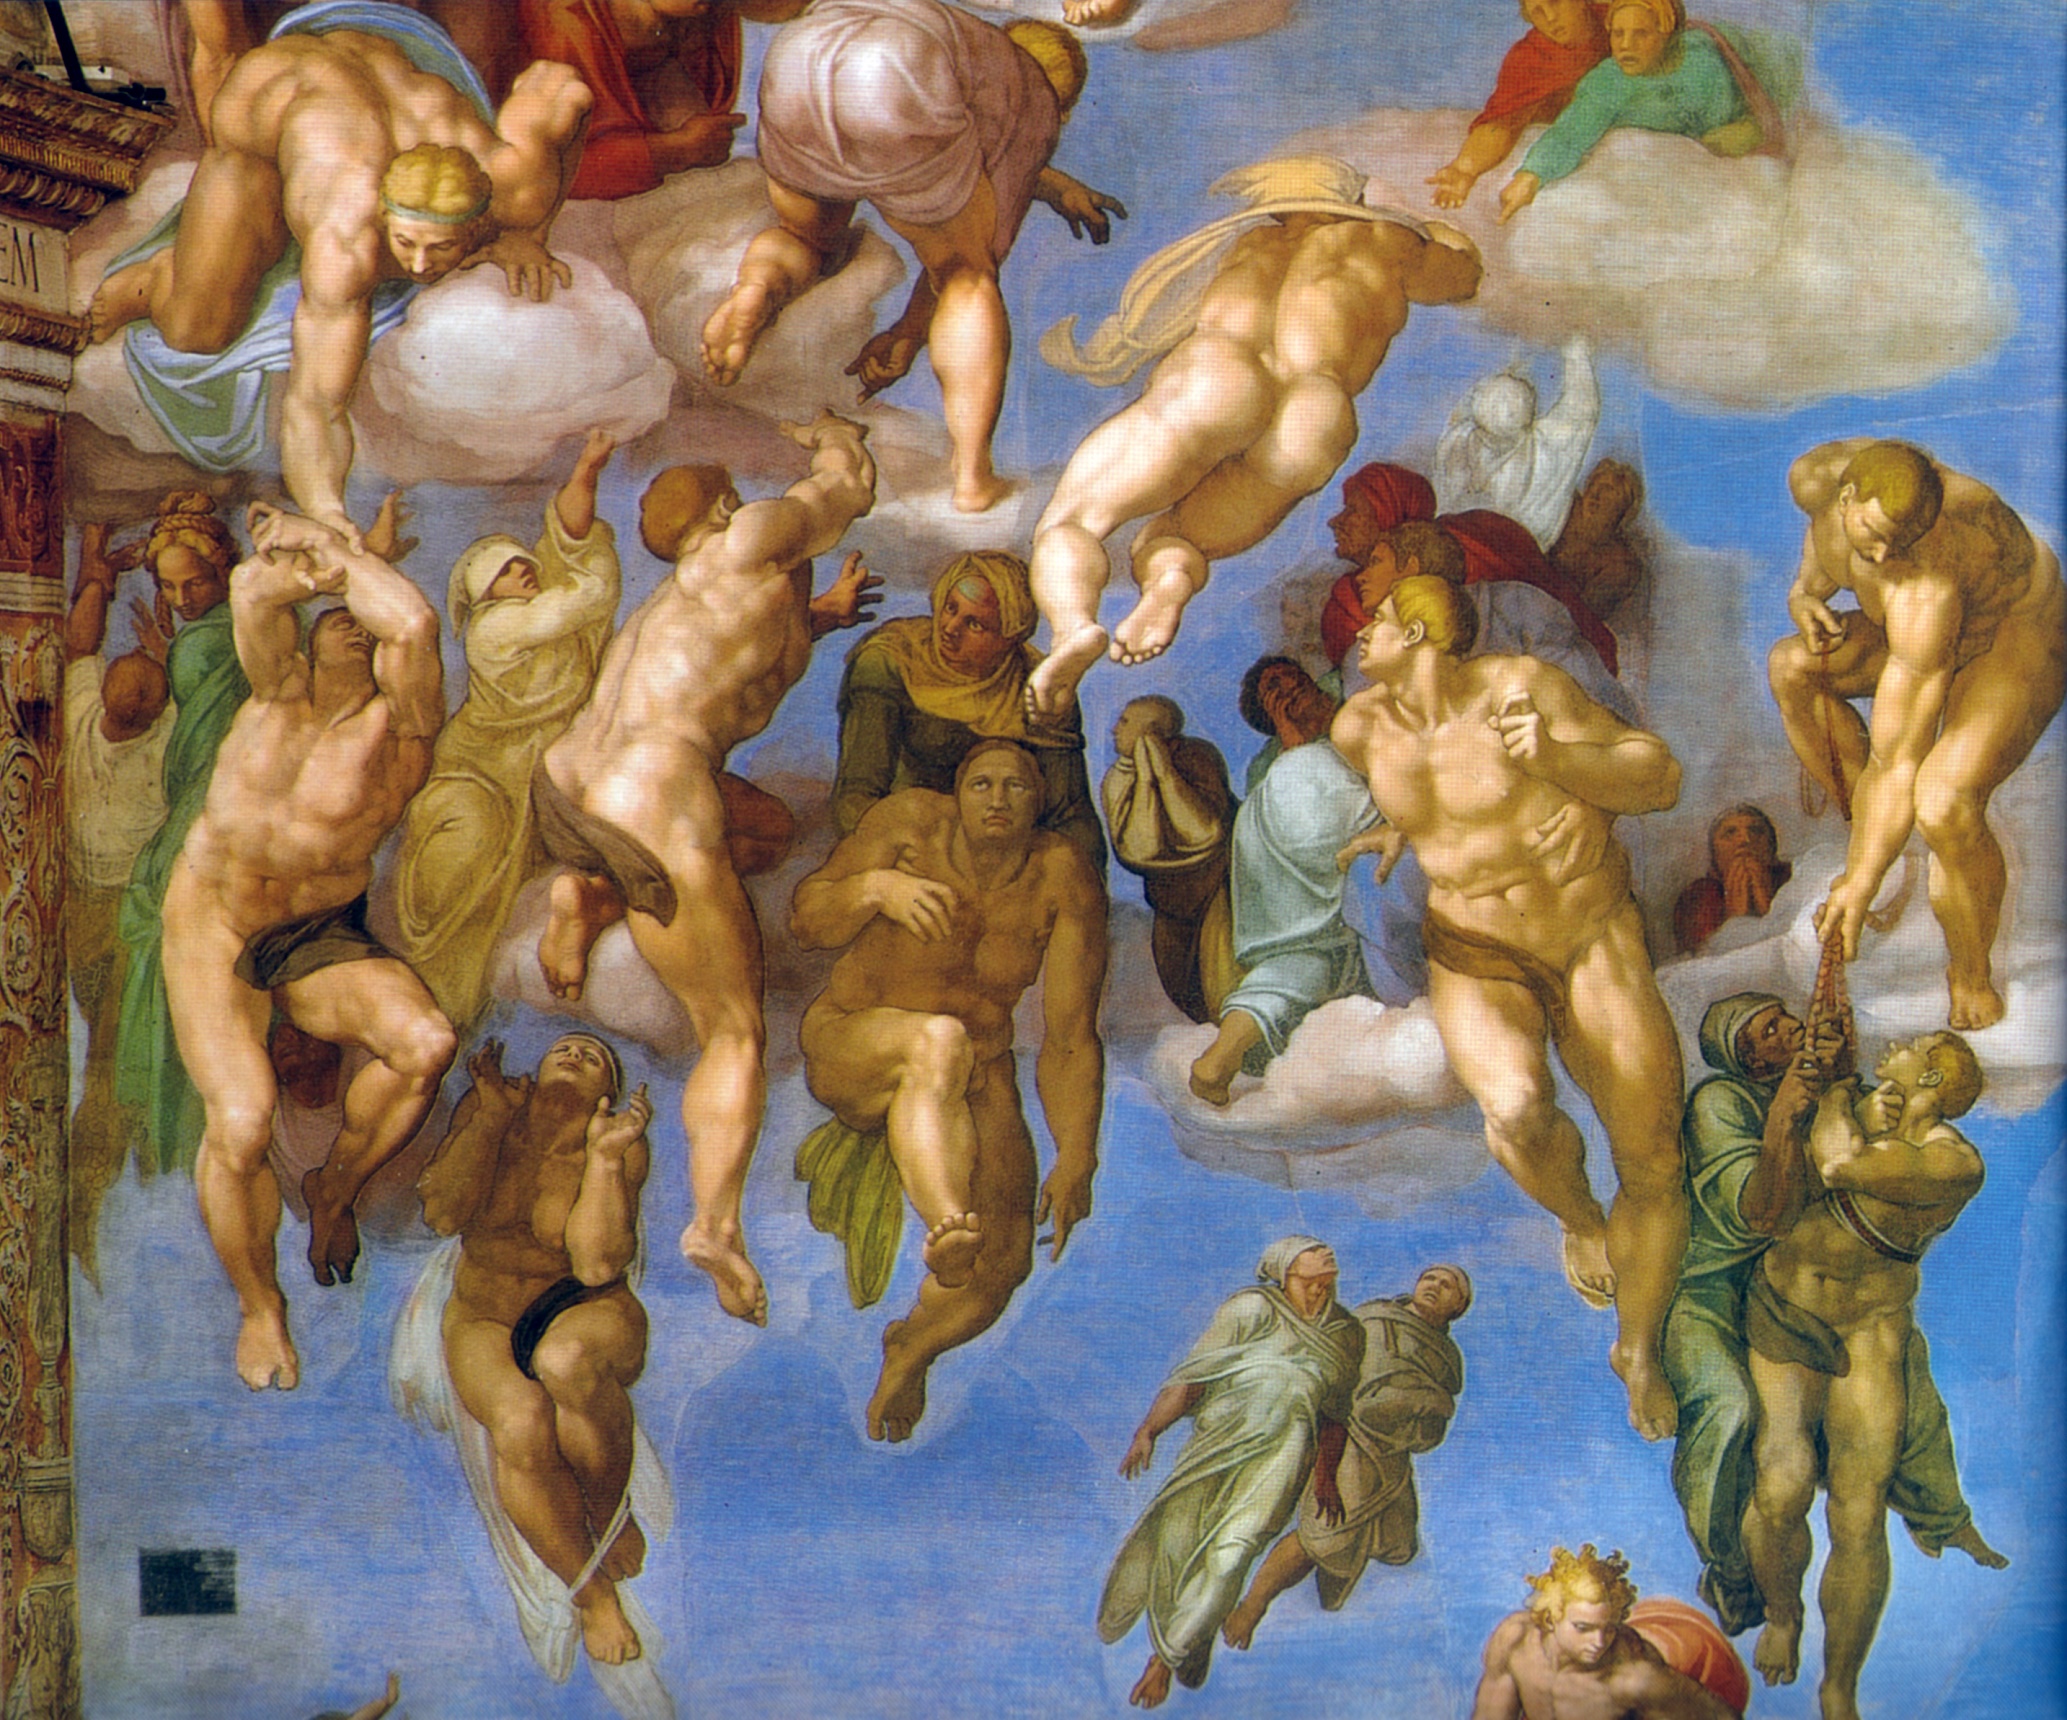 Donatello, Leonardo, Michelangelo e Rafael: artistas